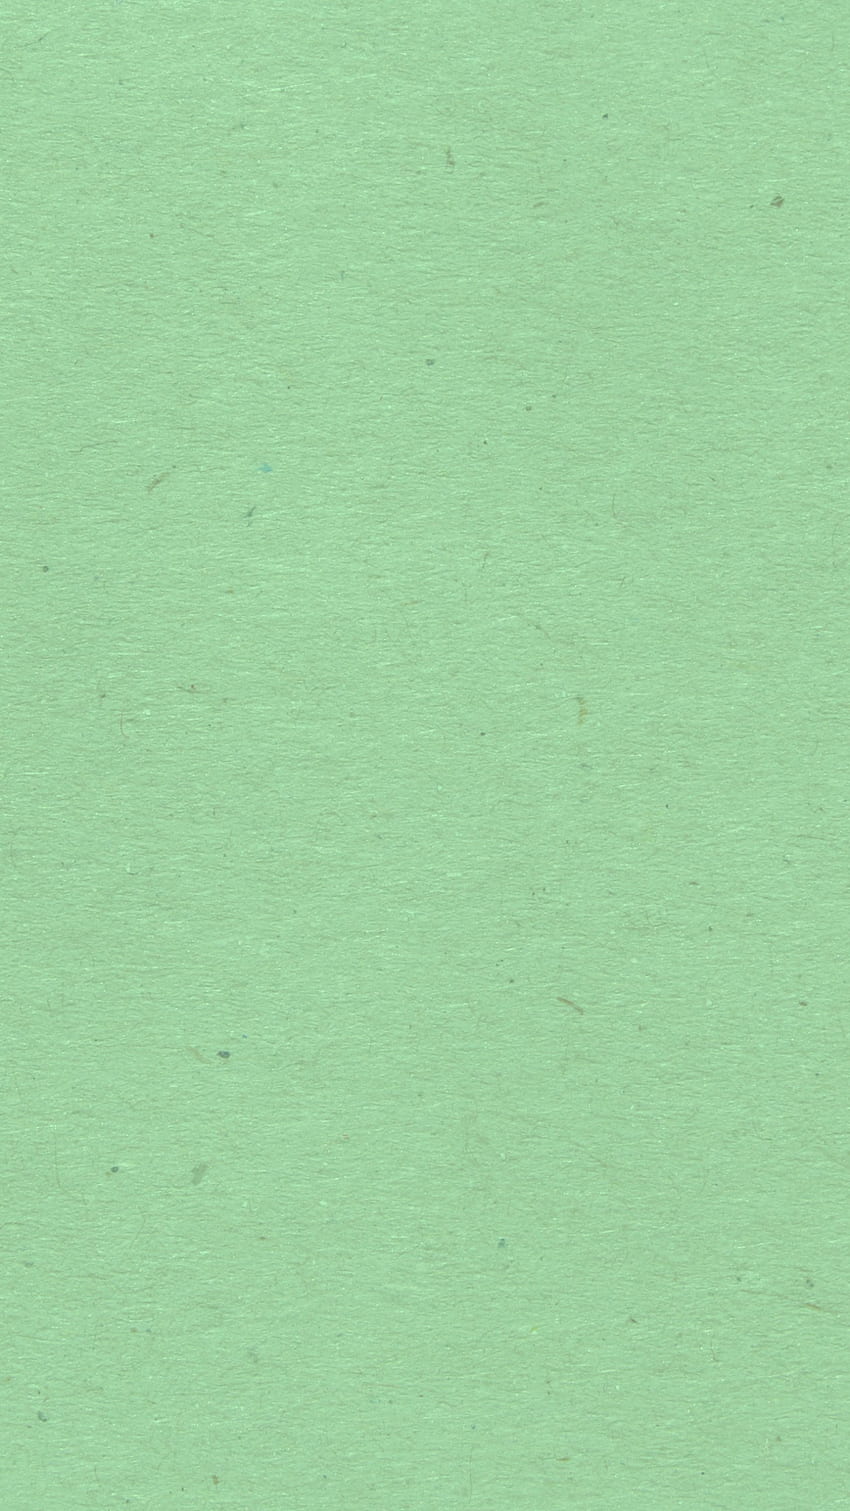 Gráfico de textura de papel verde menta público [] para su, móvil y tableta. Explora Textura verde claro. Verde azul claro, verde para fondo de pantalla del teléfono